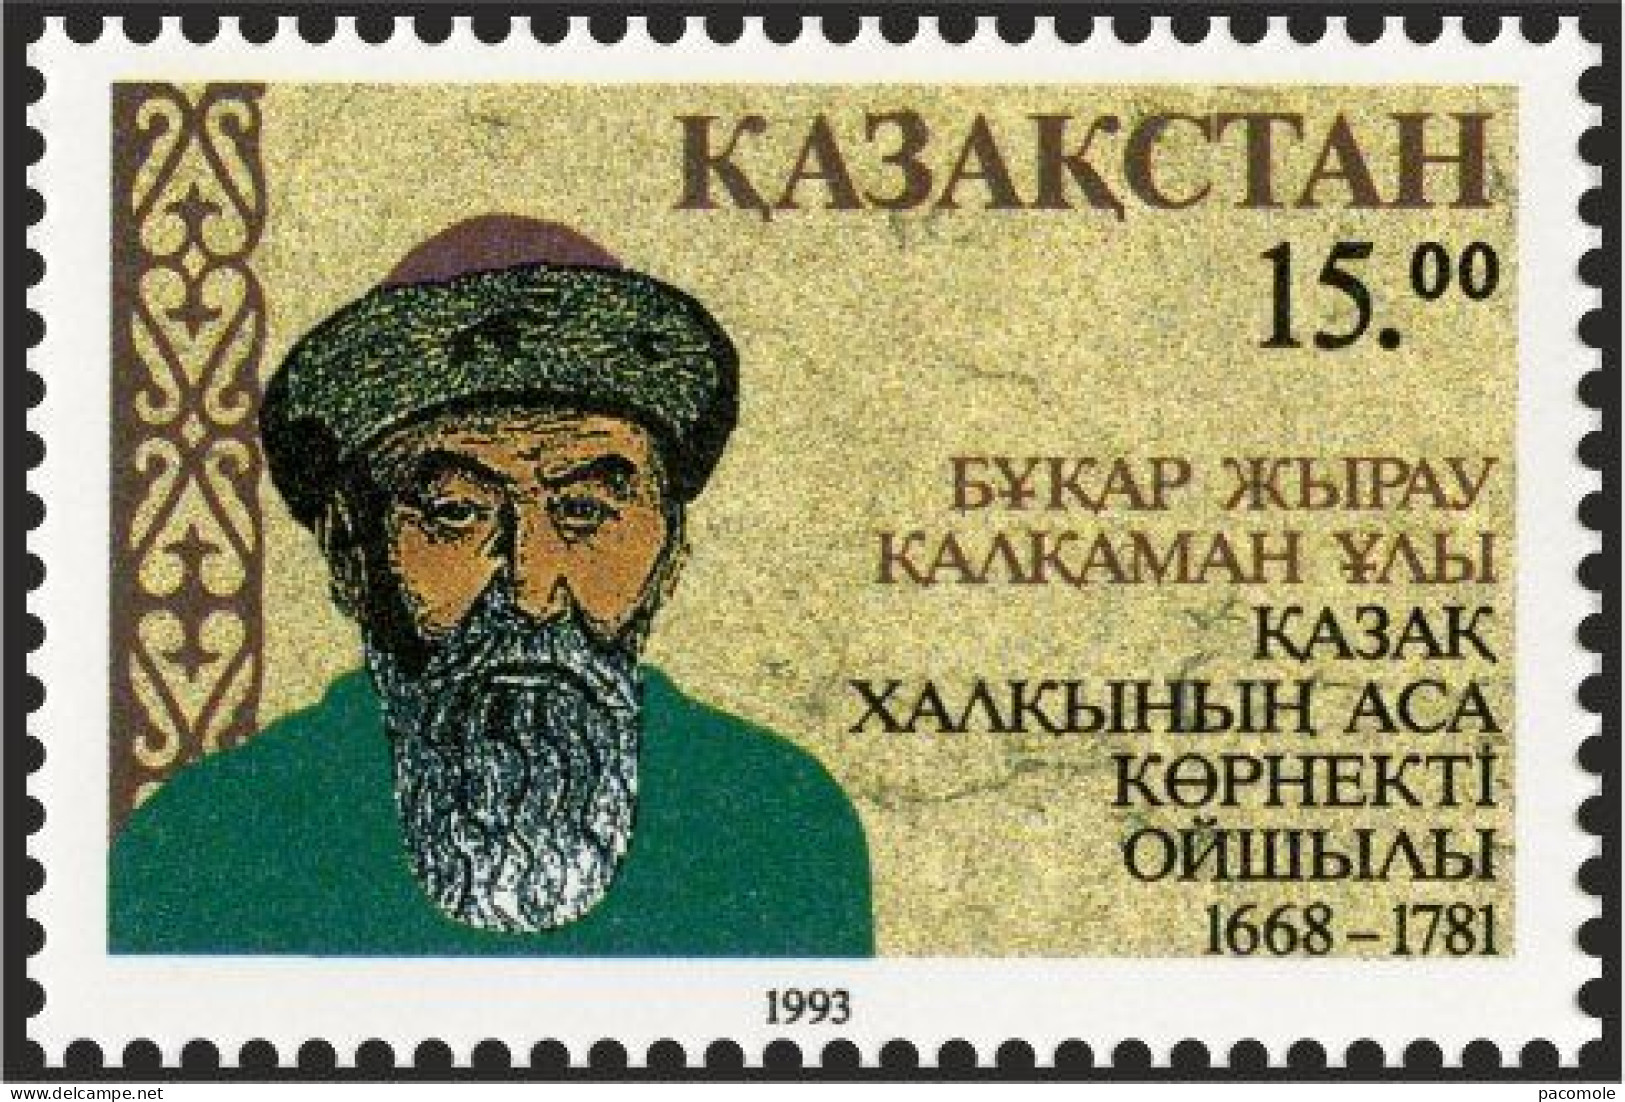 Kazakhstan 1993 - B.Z. Kalkaman-Uly (1668-1781) - Kazakhstan